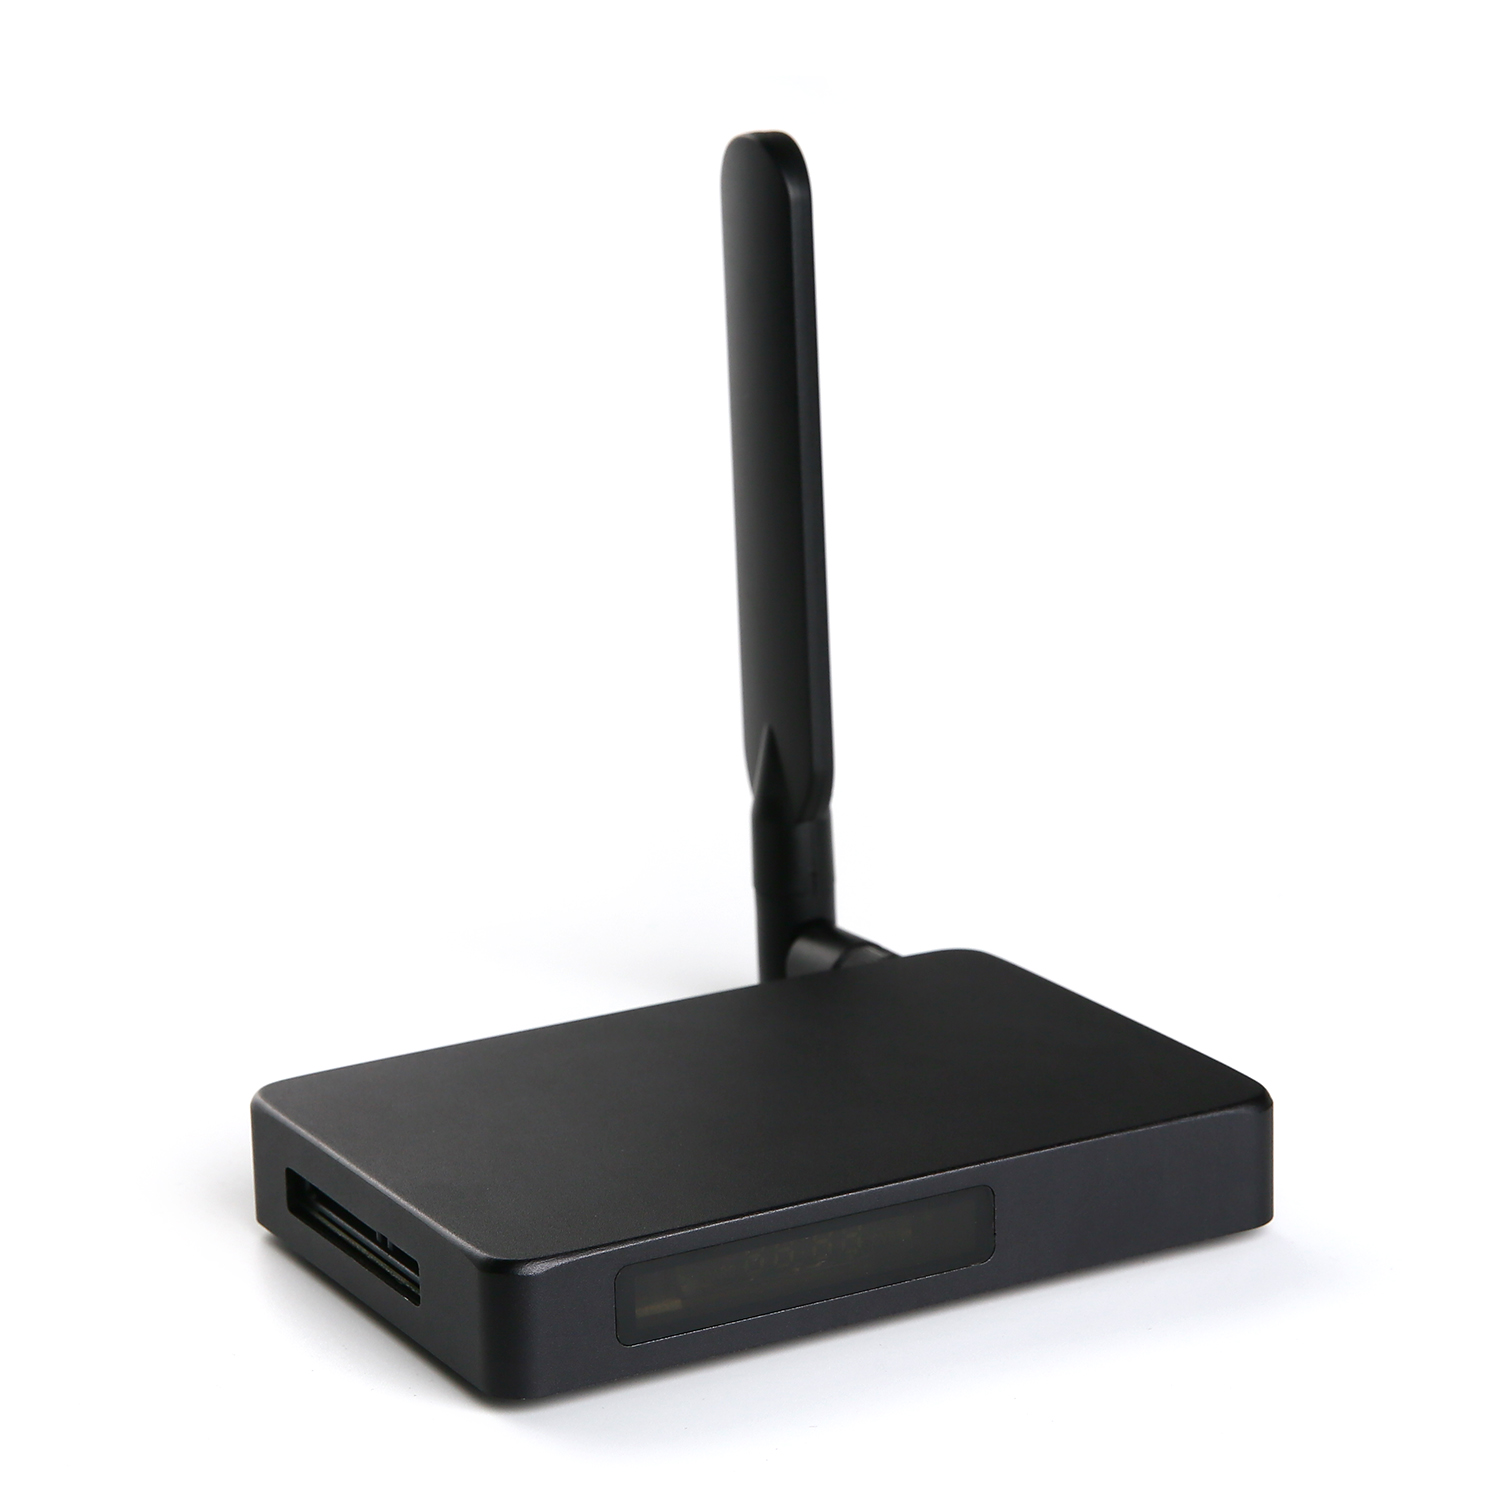 أطلق العنان لاتصال لا حدود له مع صندوق تلفزيون الإنترنت الخاص بنا - أفضل تجربة إدخال HDMI، مدعوم من Realtek RTD1295